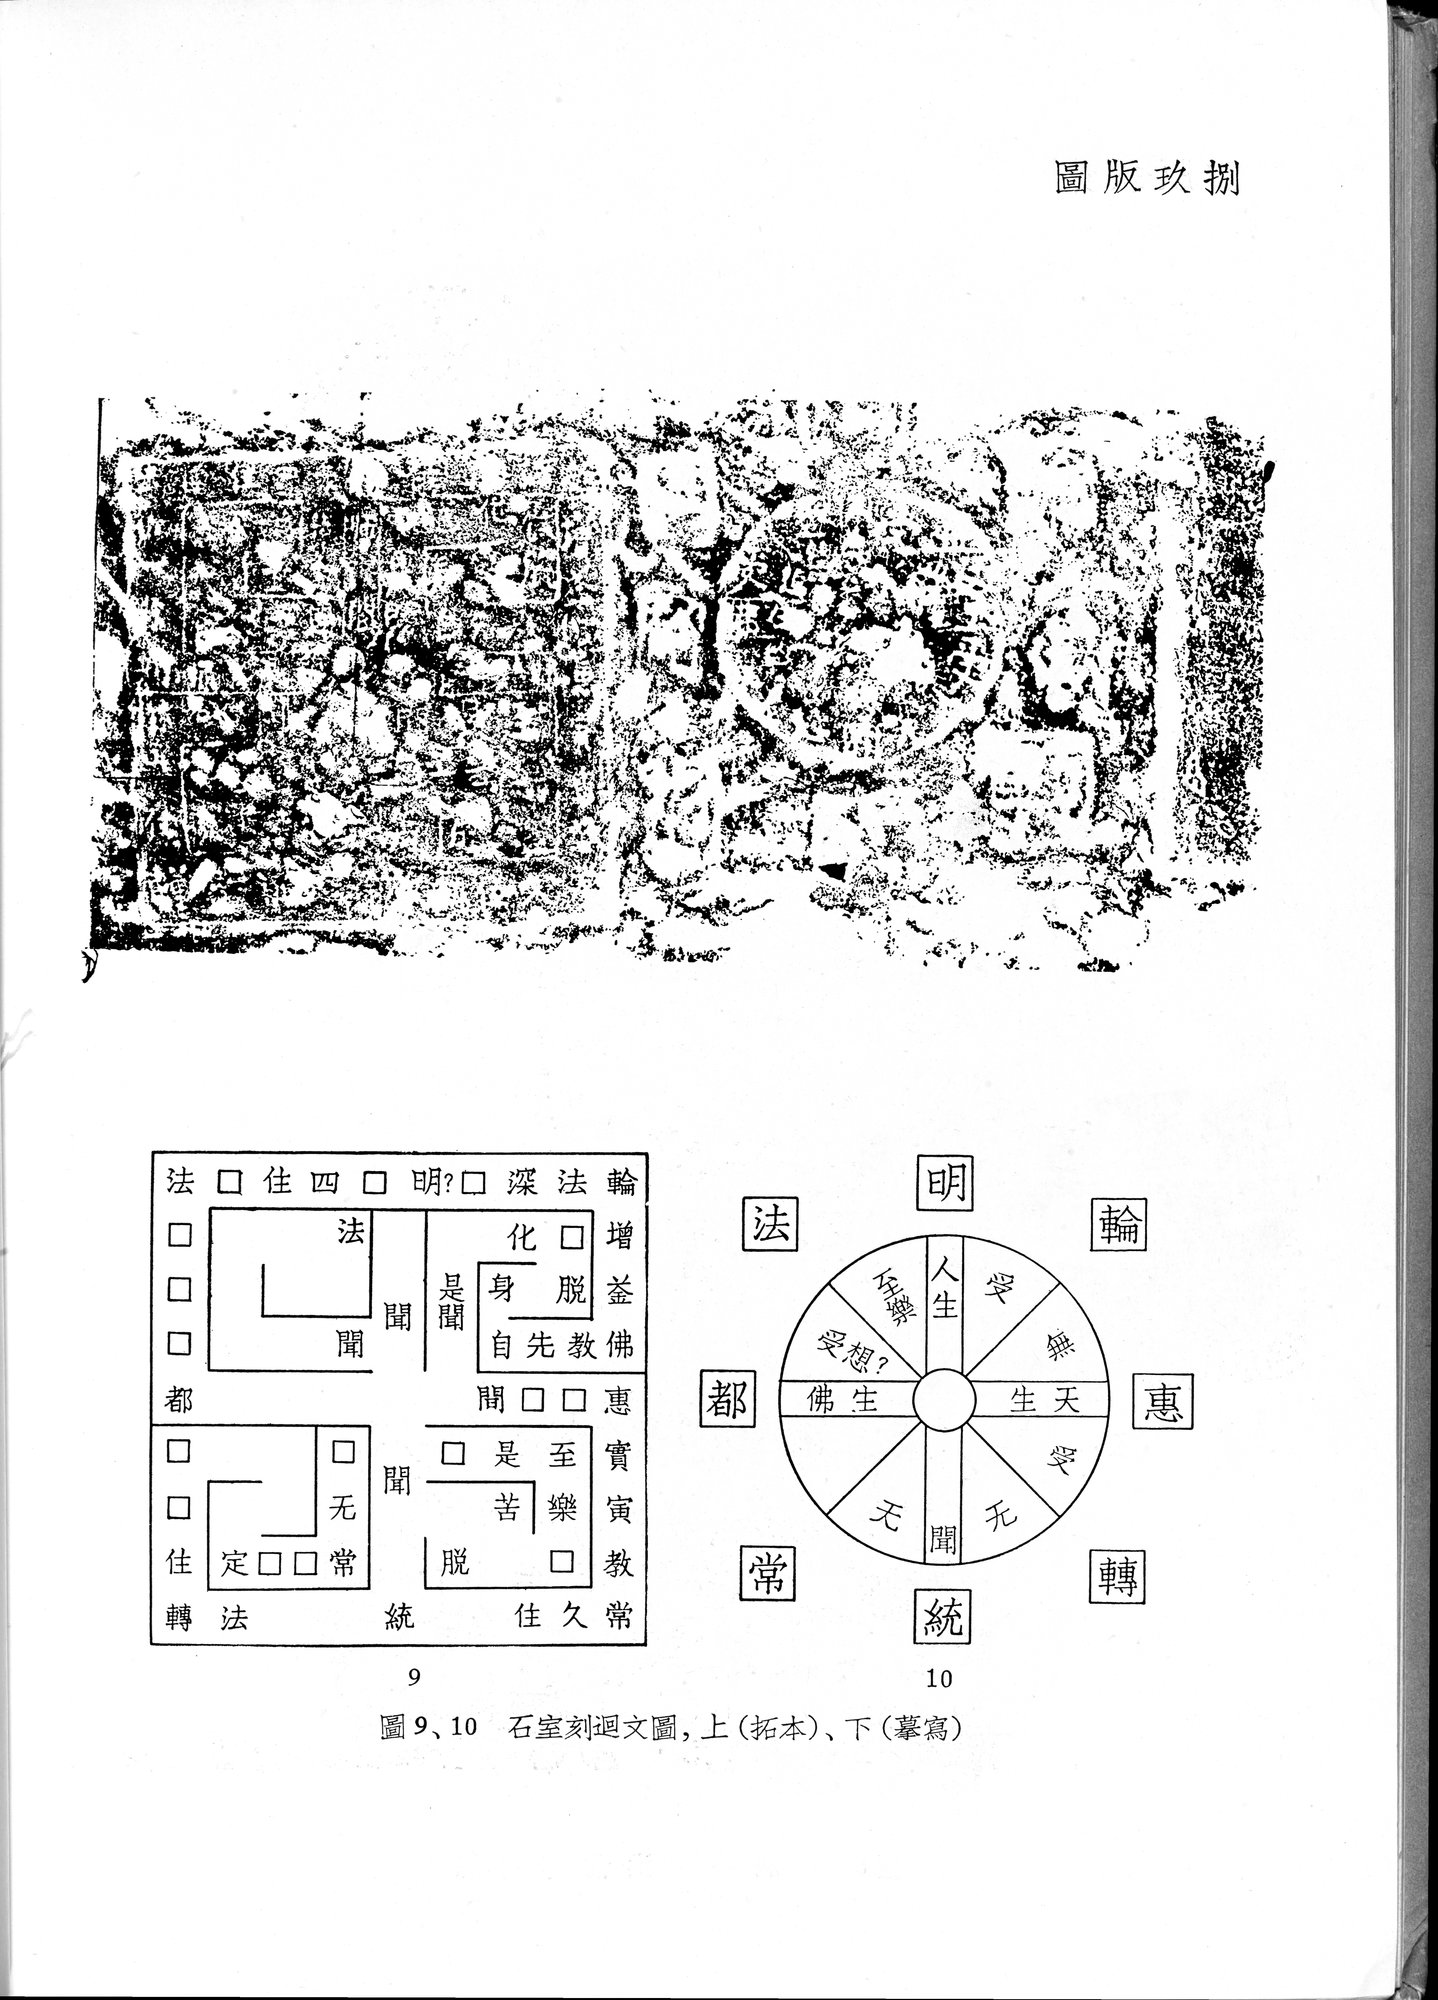 塔里木盆地考古記 : vol.1 / 332 ページ（白黒高解像度画像）